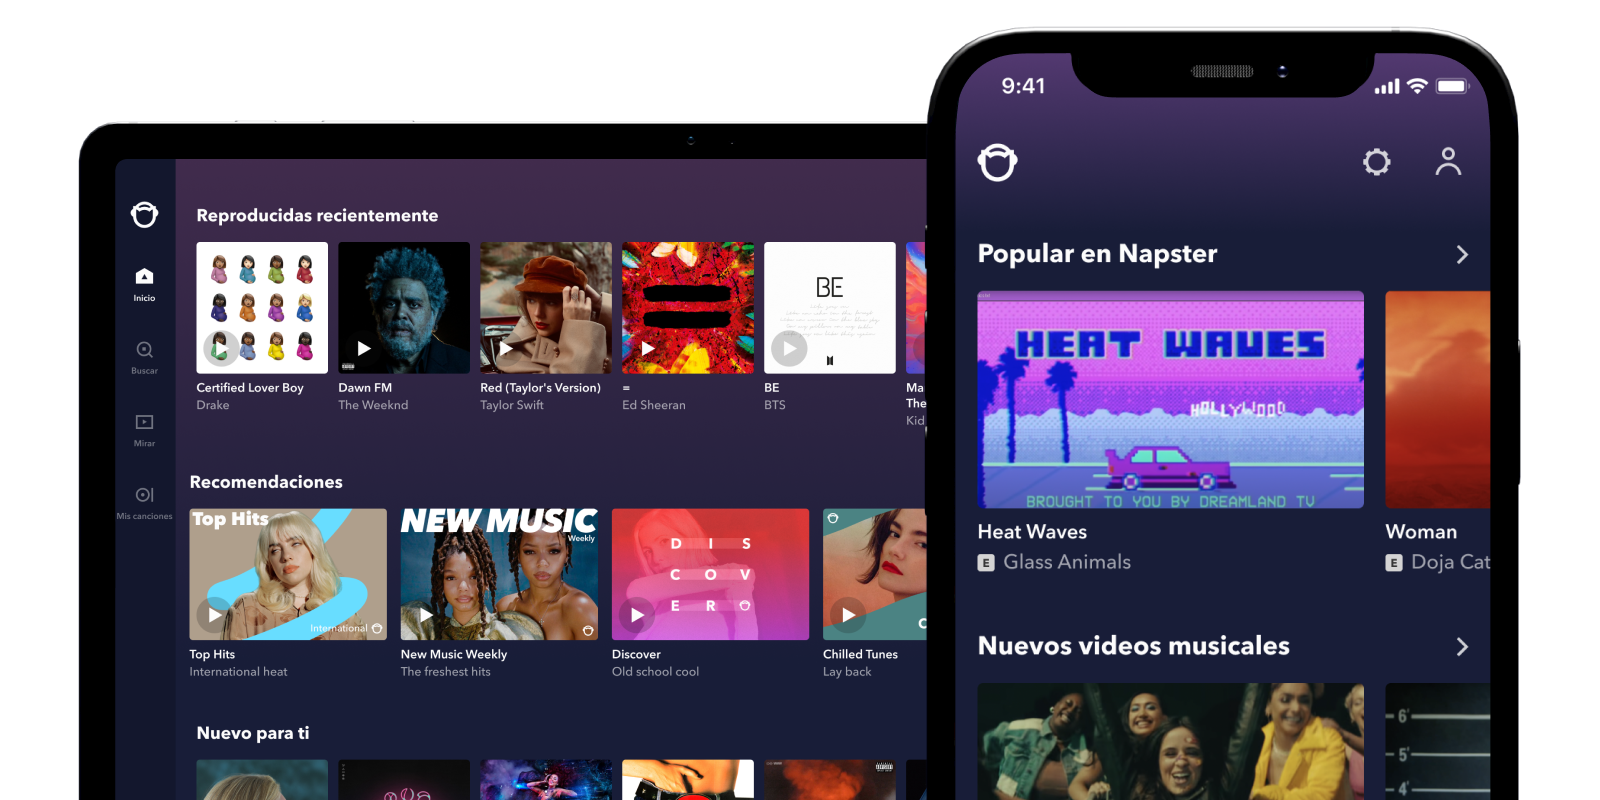 Napster es una de las principales plataformas de música en streaming